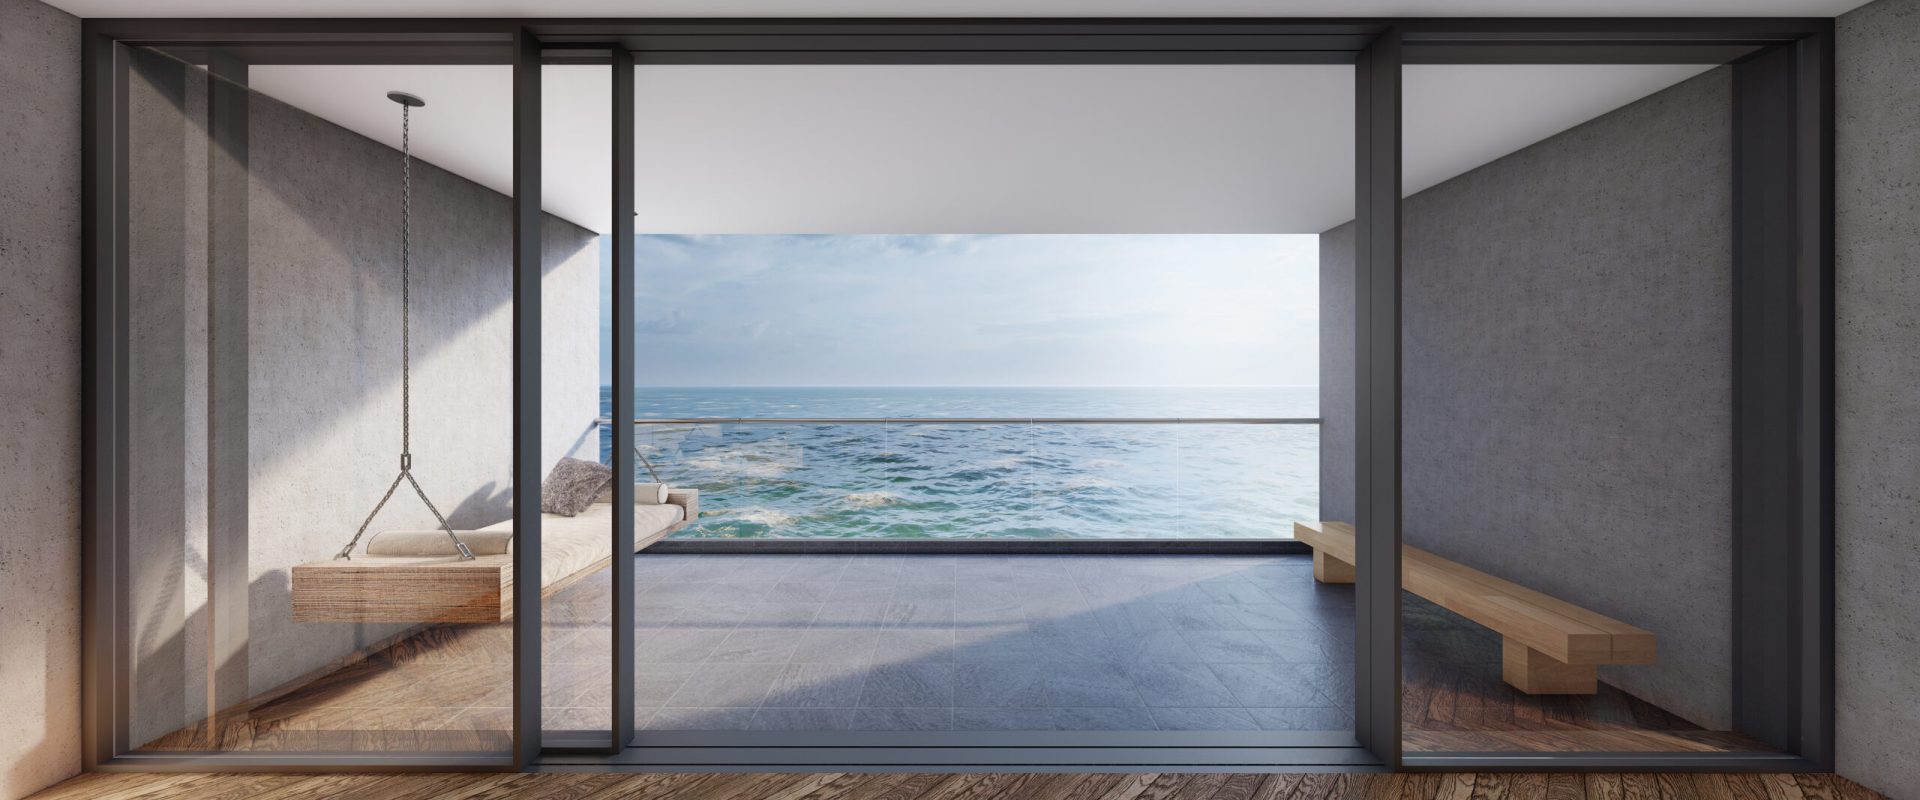 jest-to-nowoczesny-pokoj-z-balkonem-widokiem-na-morze-i-niebo-renderowanie-3d (1)